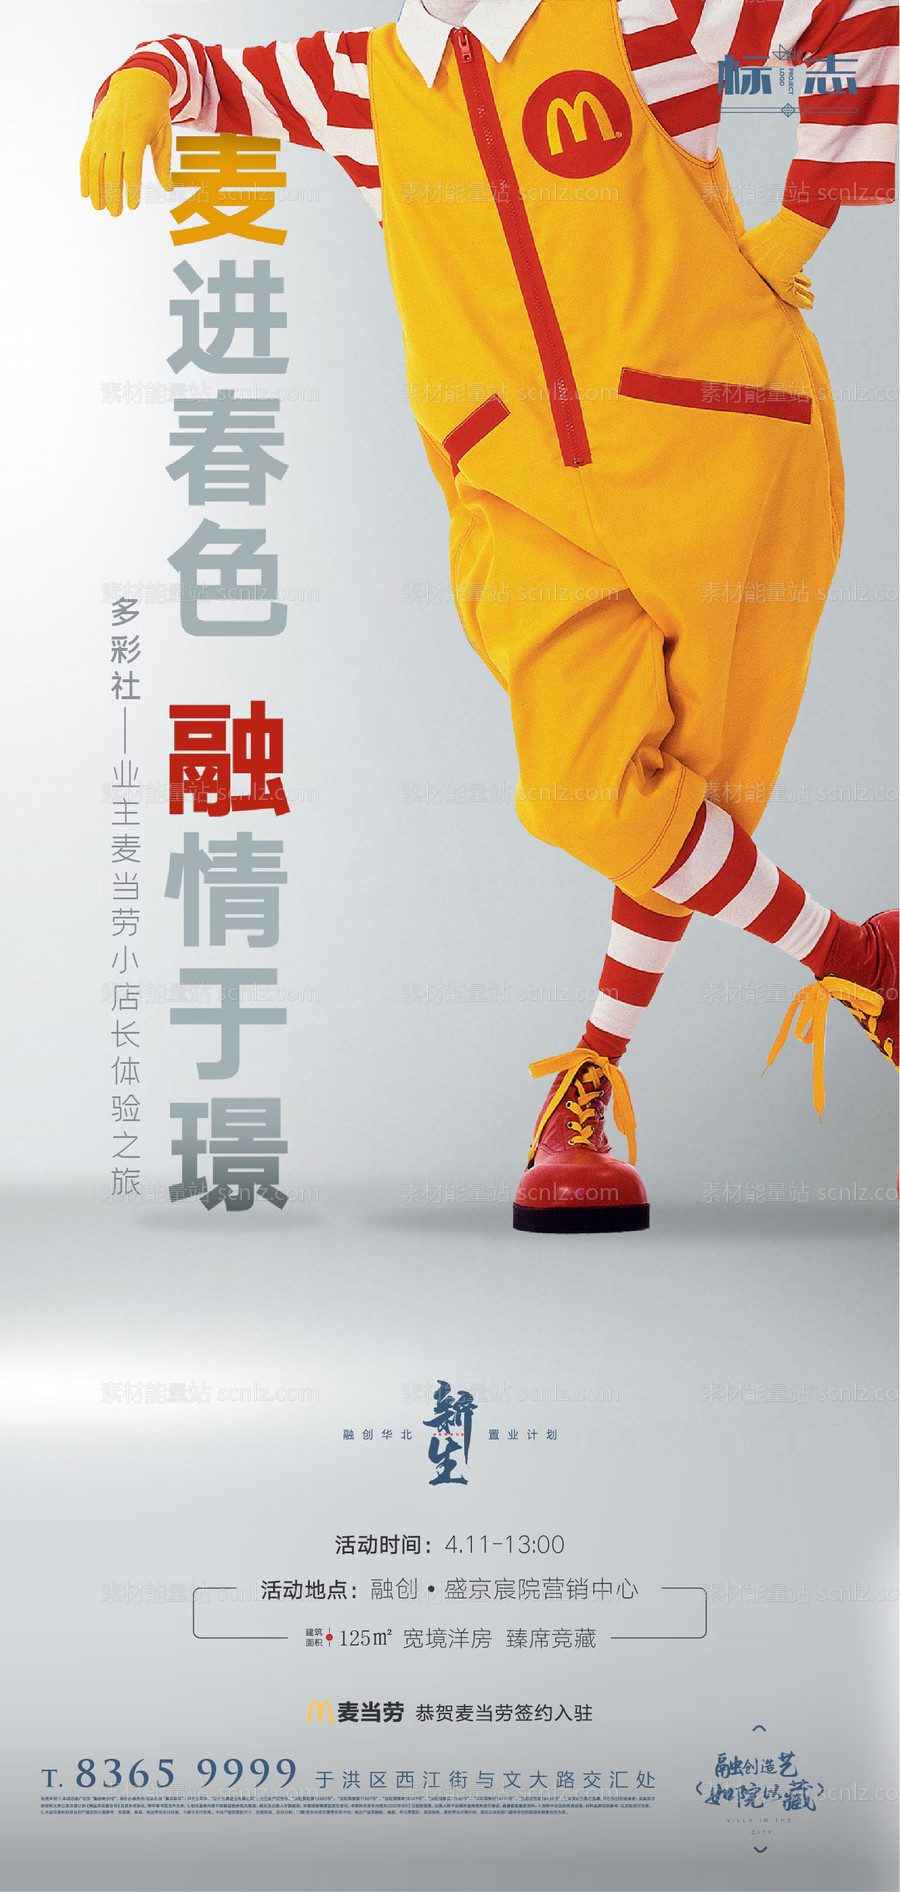 素材能量站-房地产商业旺铺麦当劳小丑创意海报